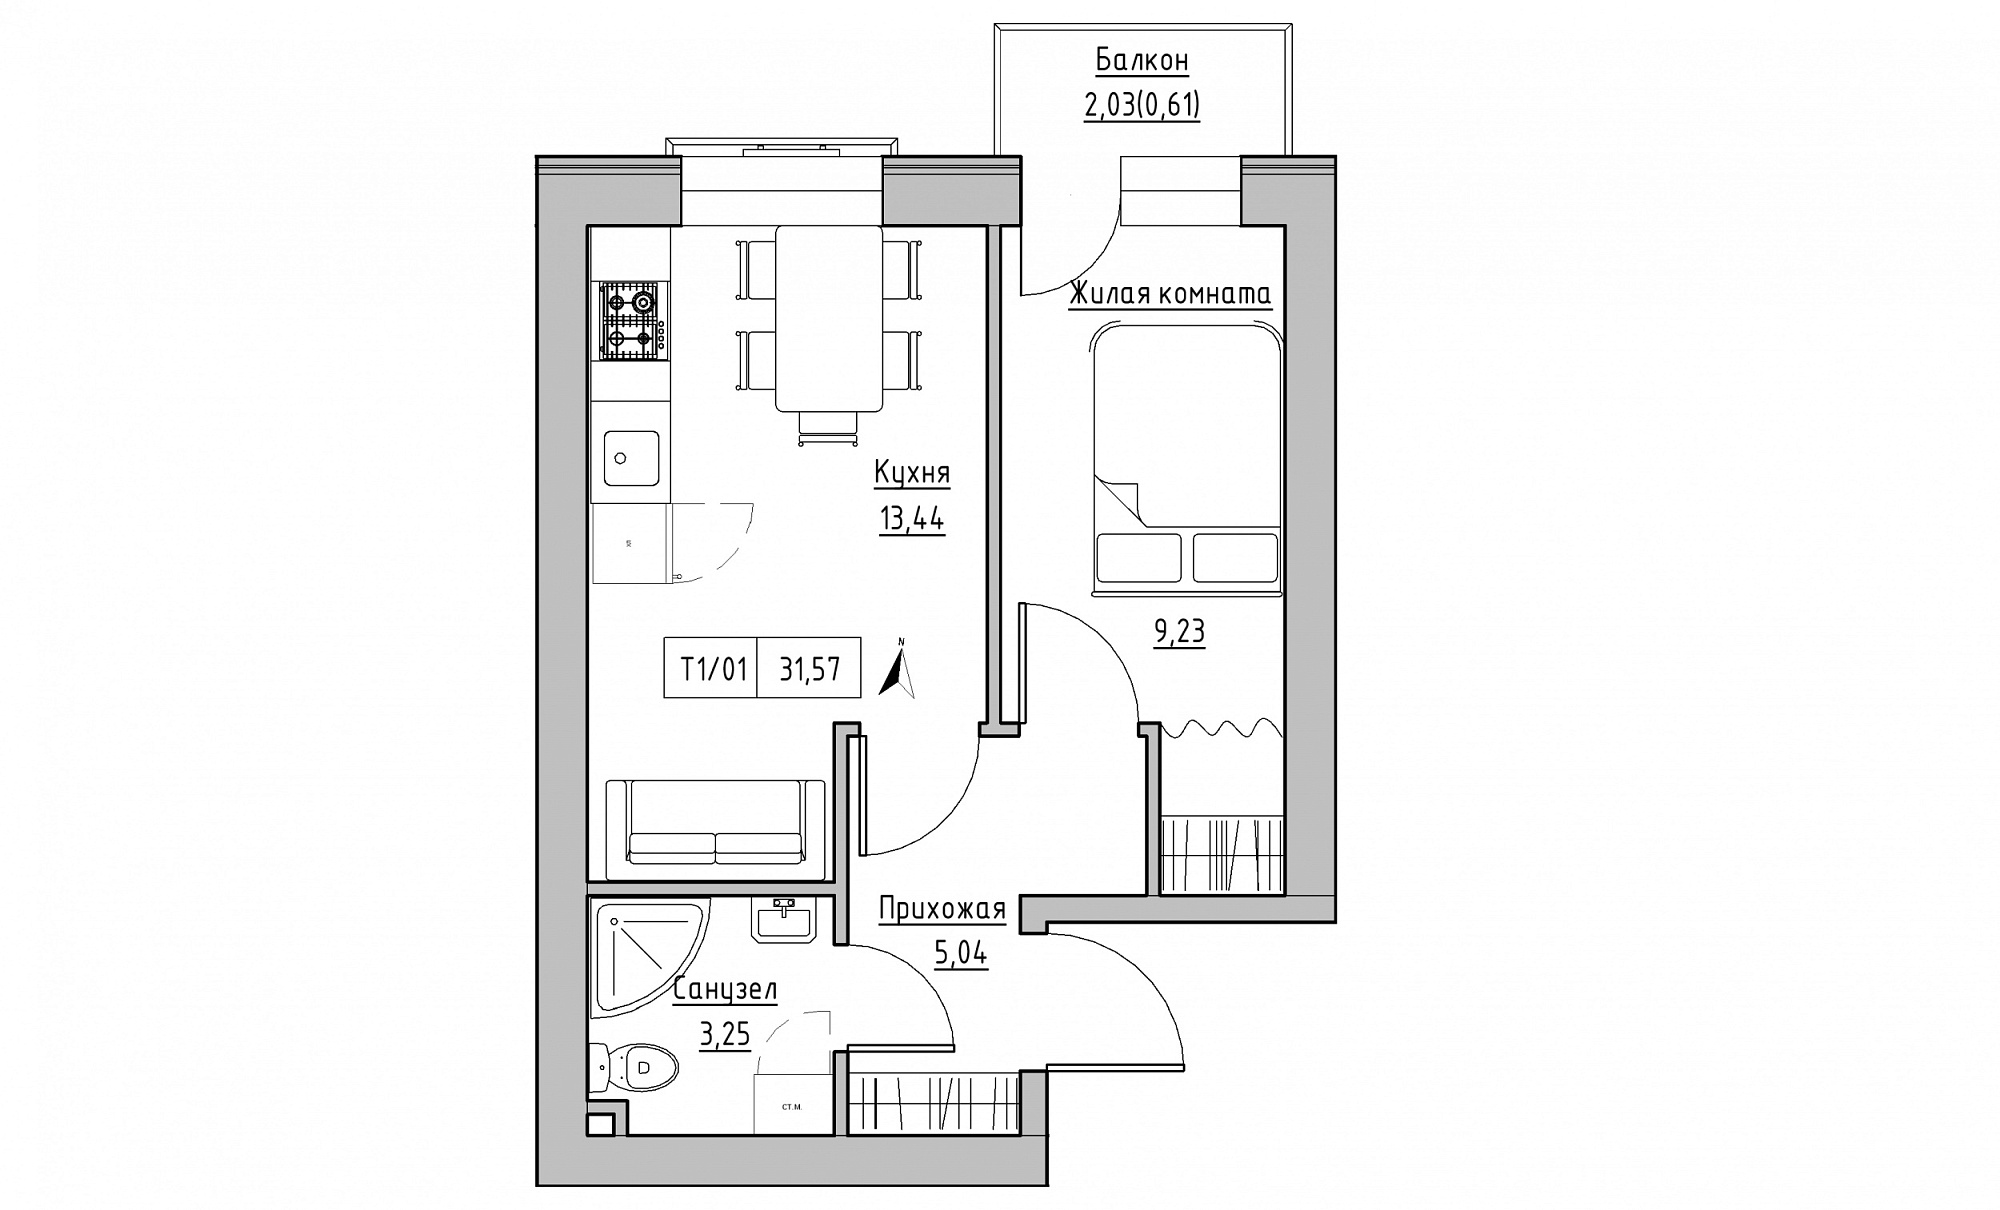 Планування 1-к квартира площею 31.57м2, KS-015-04/0013.